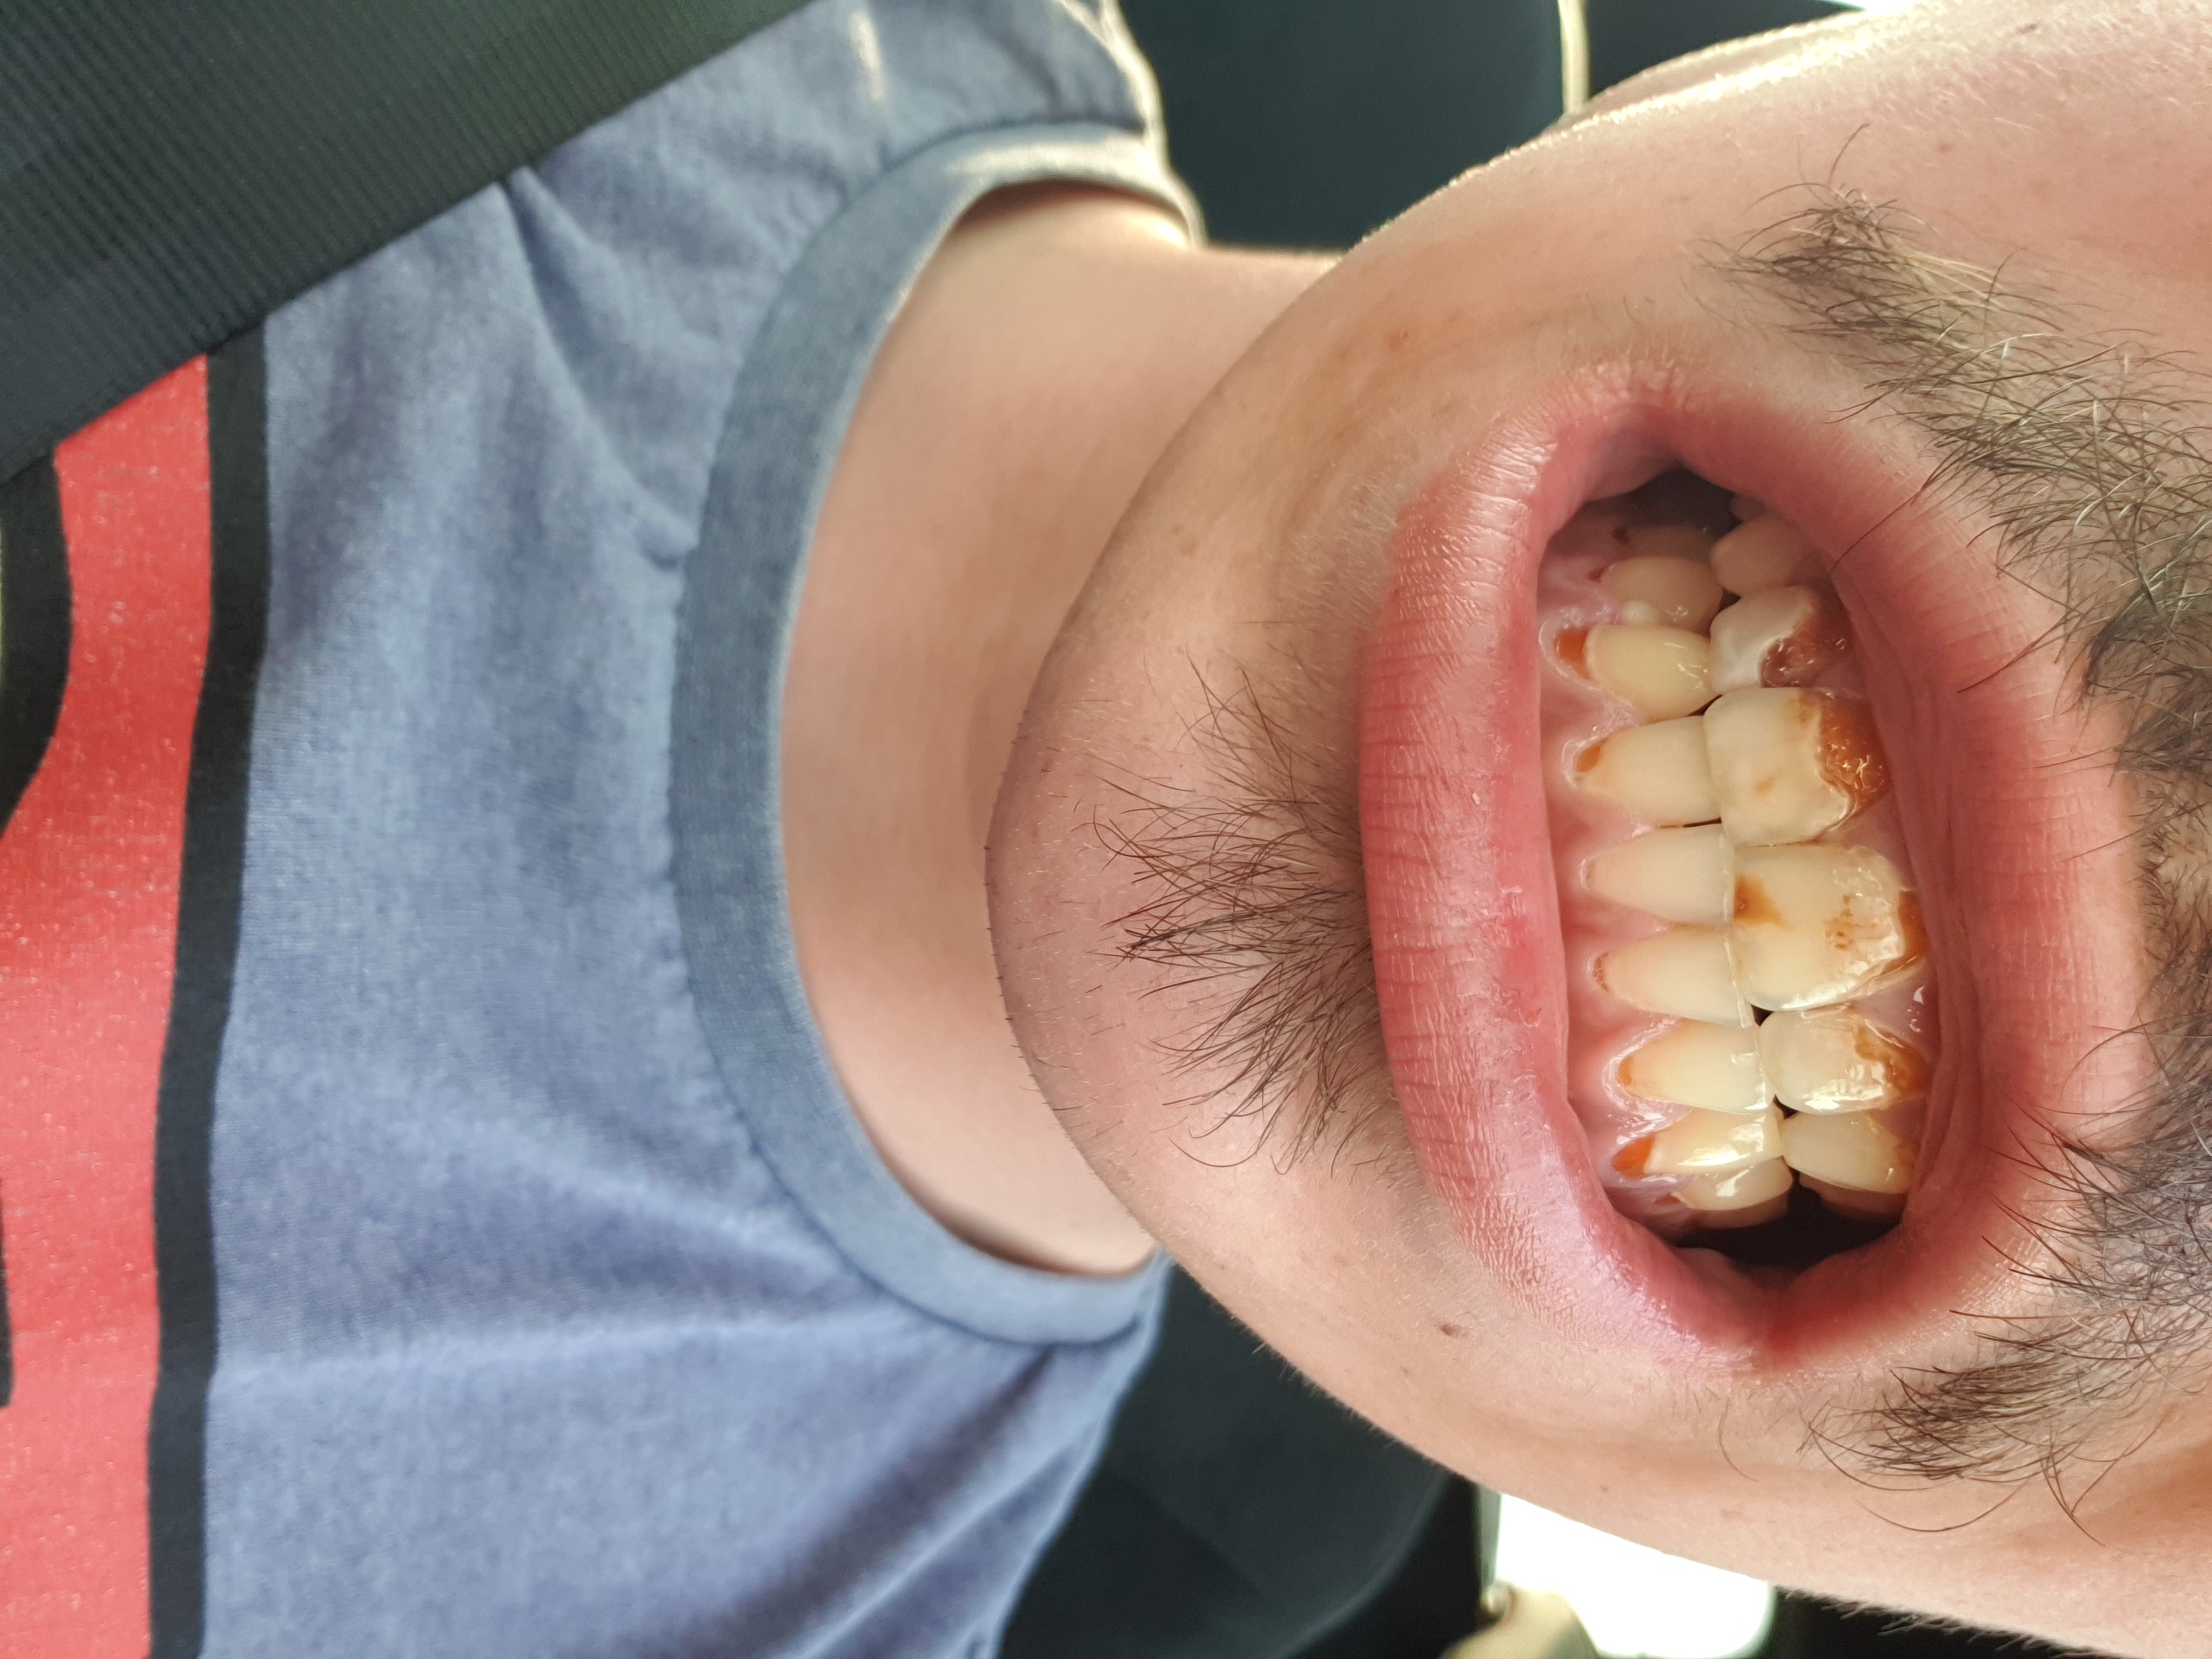 maak een foto Bij wet kennisgeving Heel erg slechte tanden op jonge leeftijd (22) | Tandarts.nl Forum